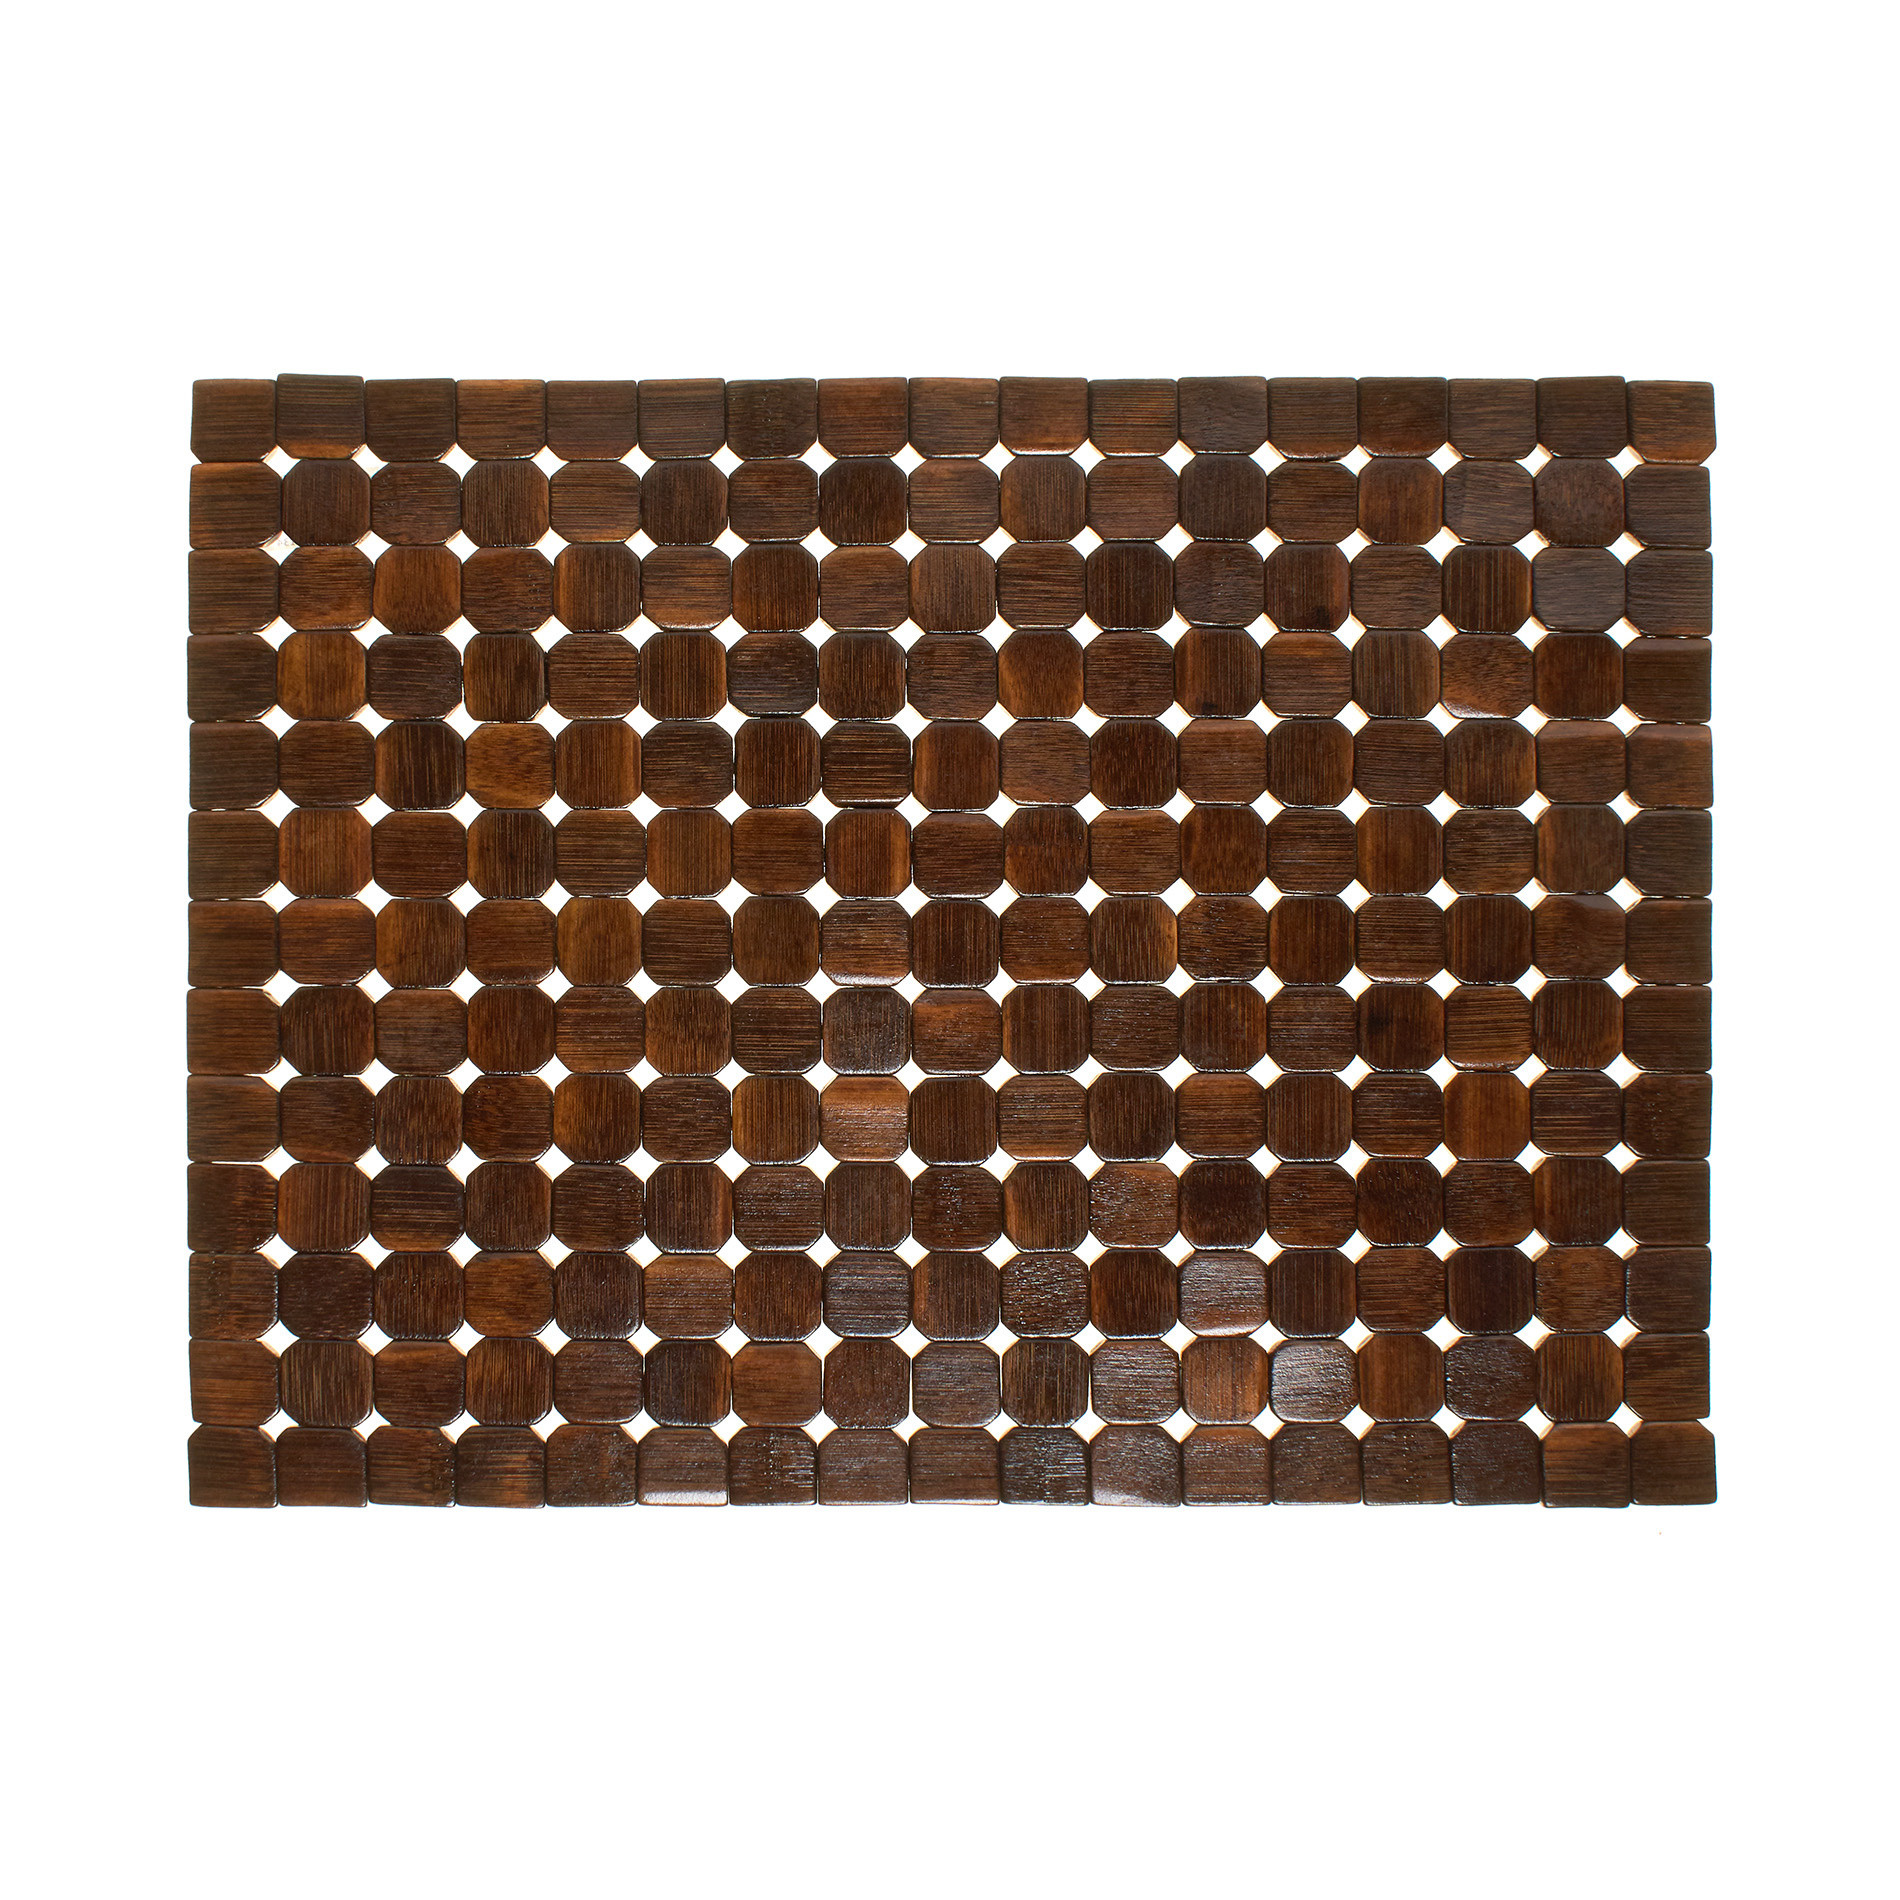 Расписной бамбуковый коврик для столовых приборов Coincasa, темно-коричневый расписной бамбуковый коврик для столовых приборов coincasa светло коричневый